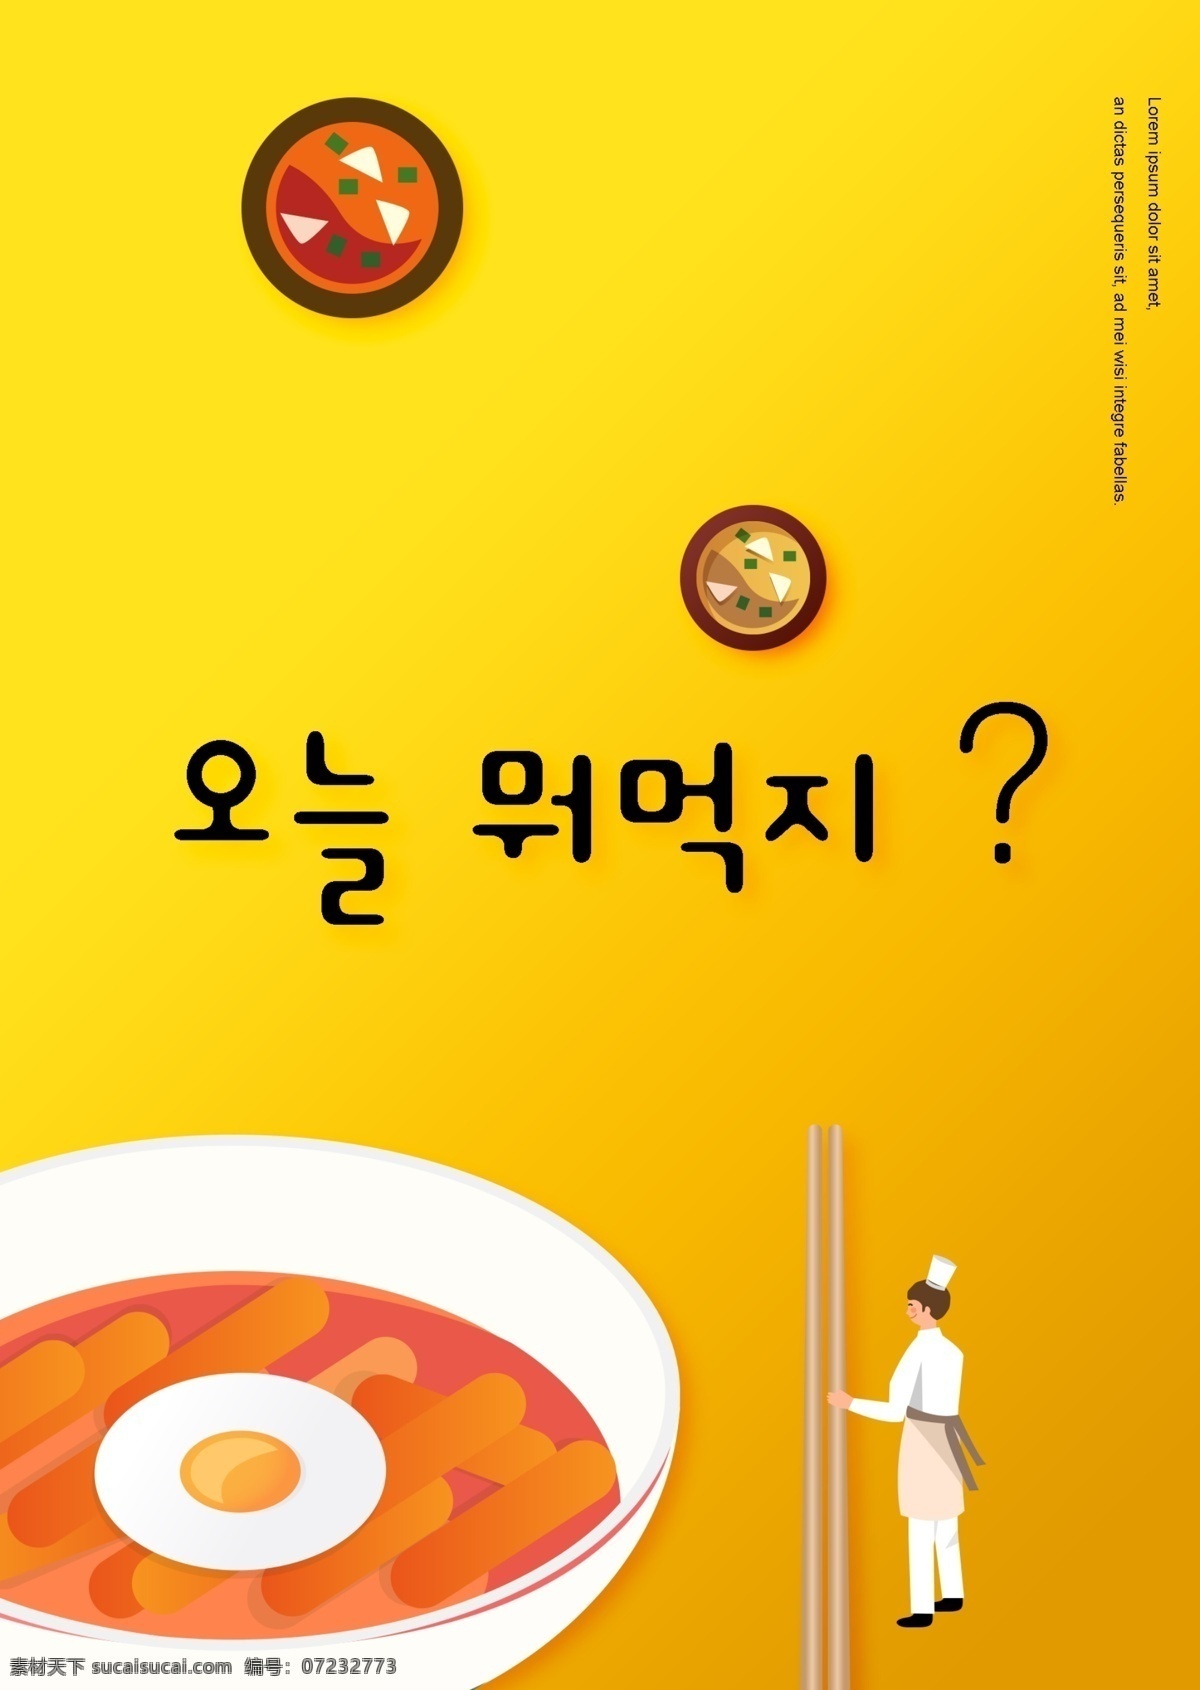 食品 领域 图画 海报 床上 简单 韩国 米饭 黄色 橙子 只有一个 主厨 食物成分 工作 筷子 一些 美食 韩国料理 韩国广告托盘 韩国食品广告 蛋糕 食物